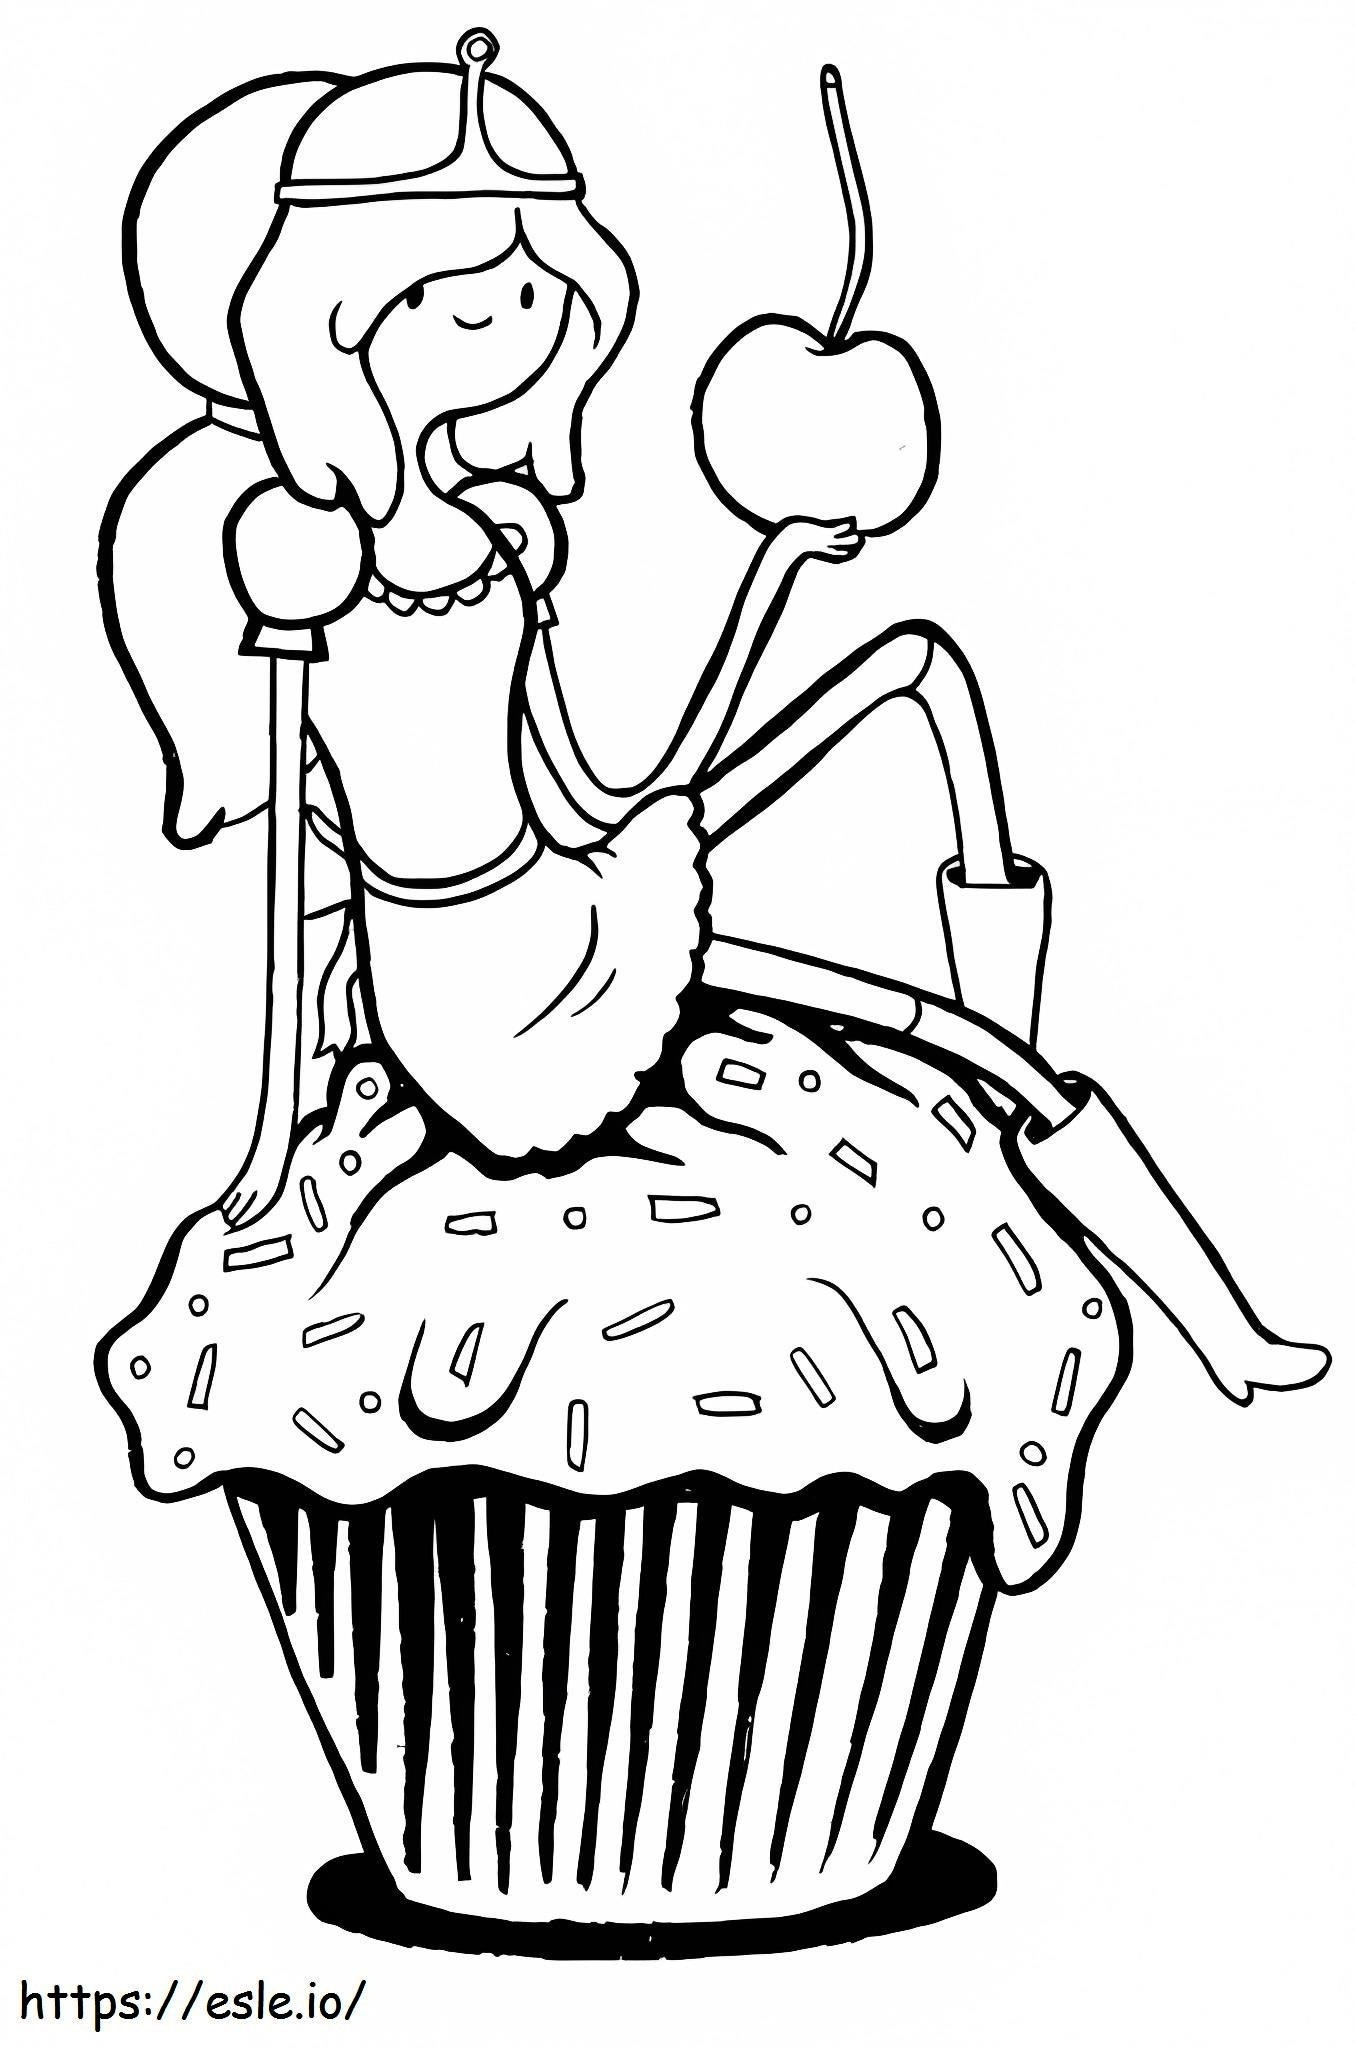 Prințesa Bubblegum ținând măr de colorat